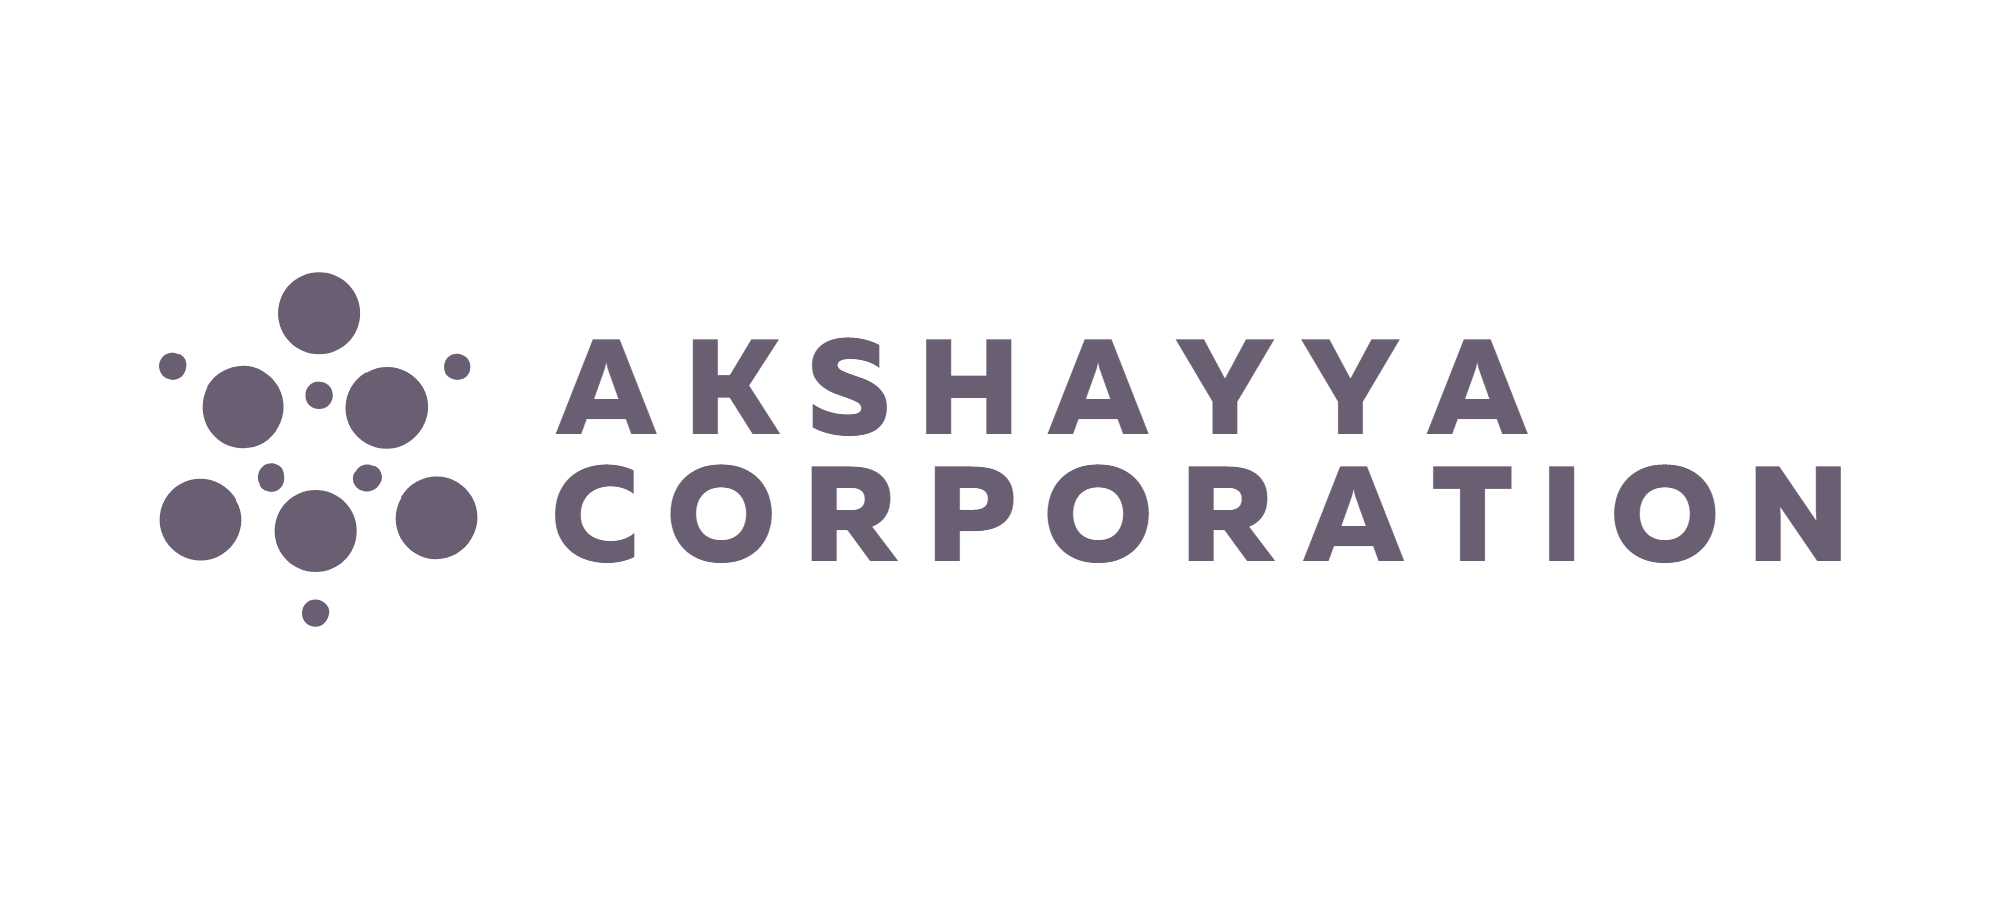 Akshayya Corporation